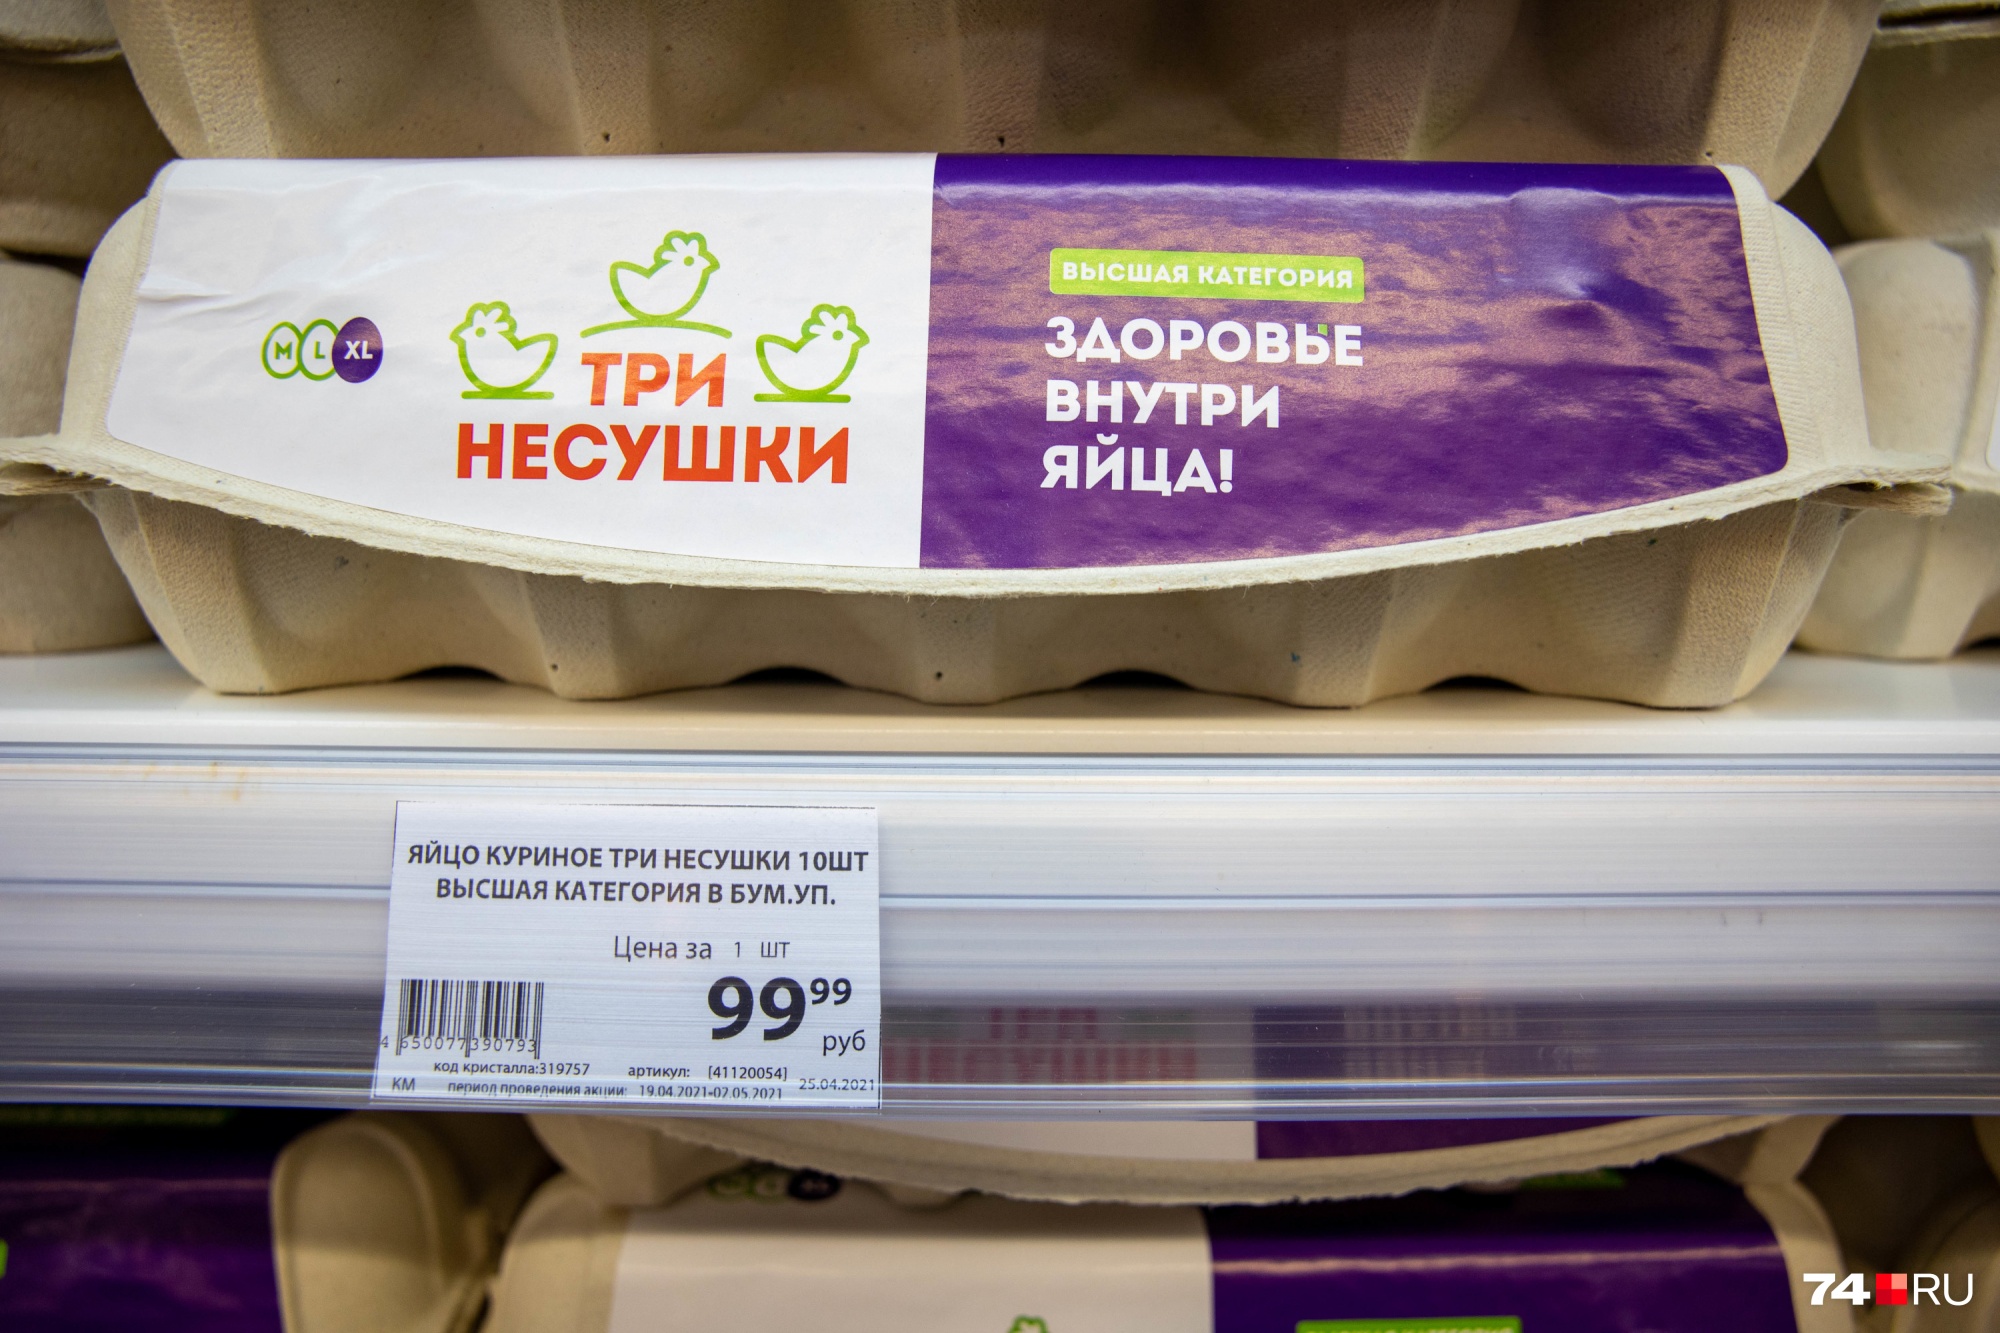 В SPAR «Три несушки» стоят 99,99 рубля